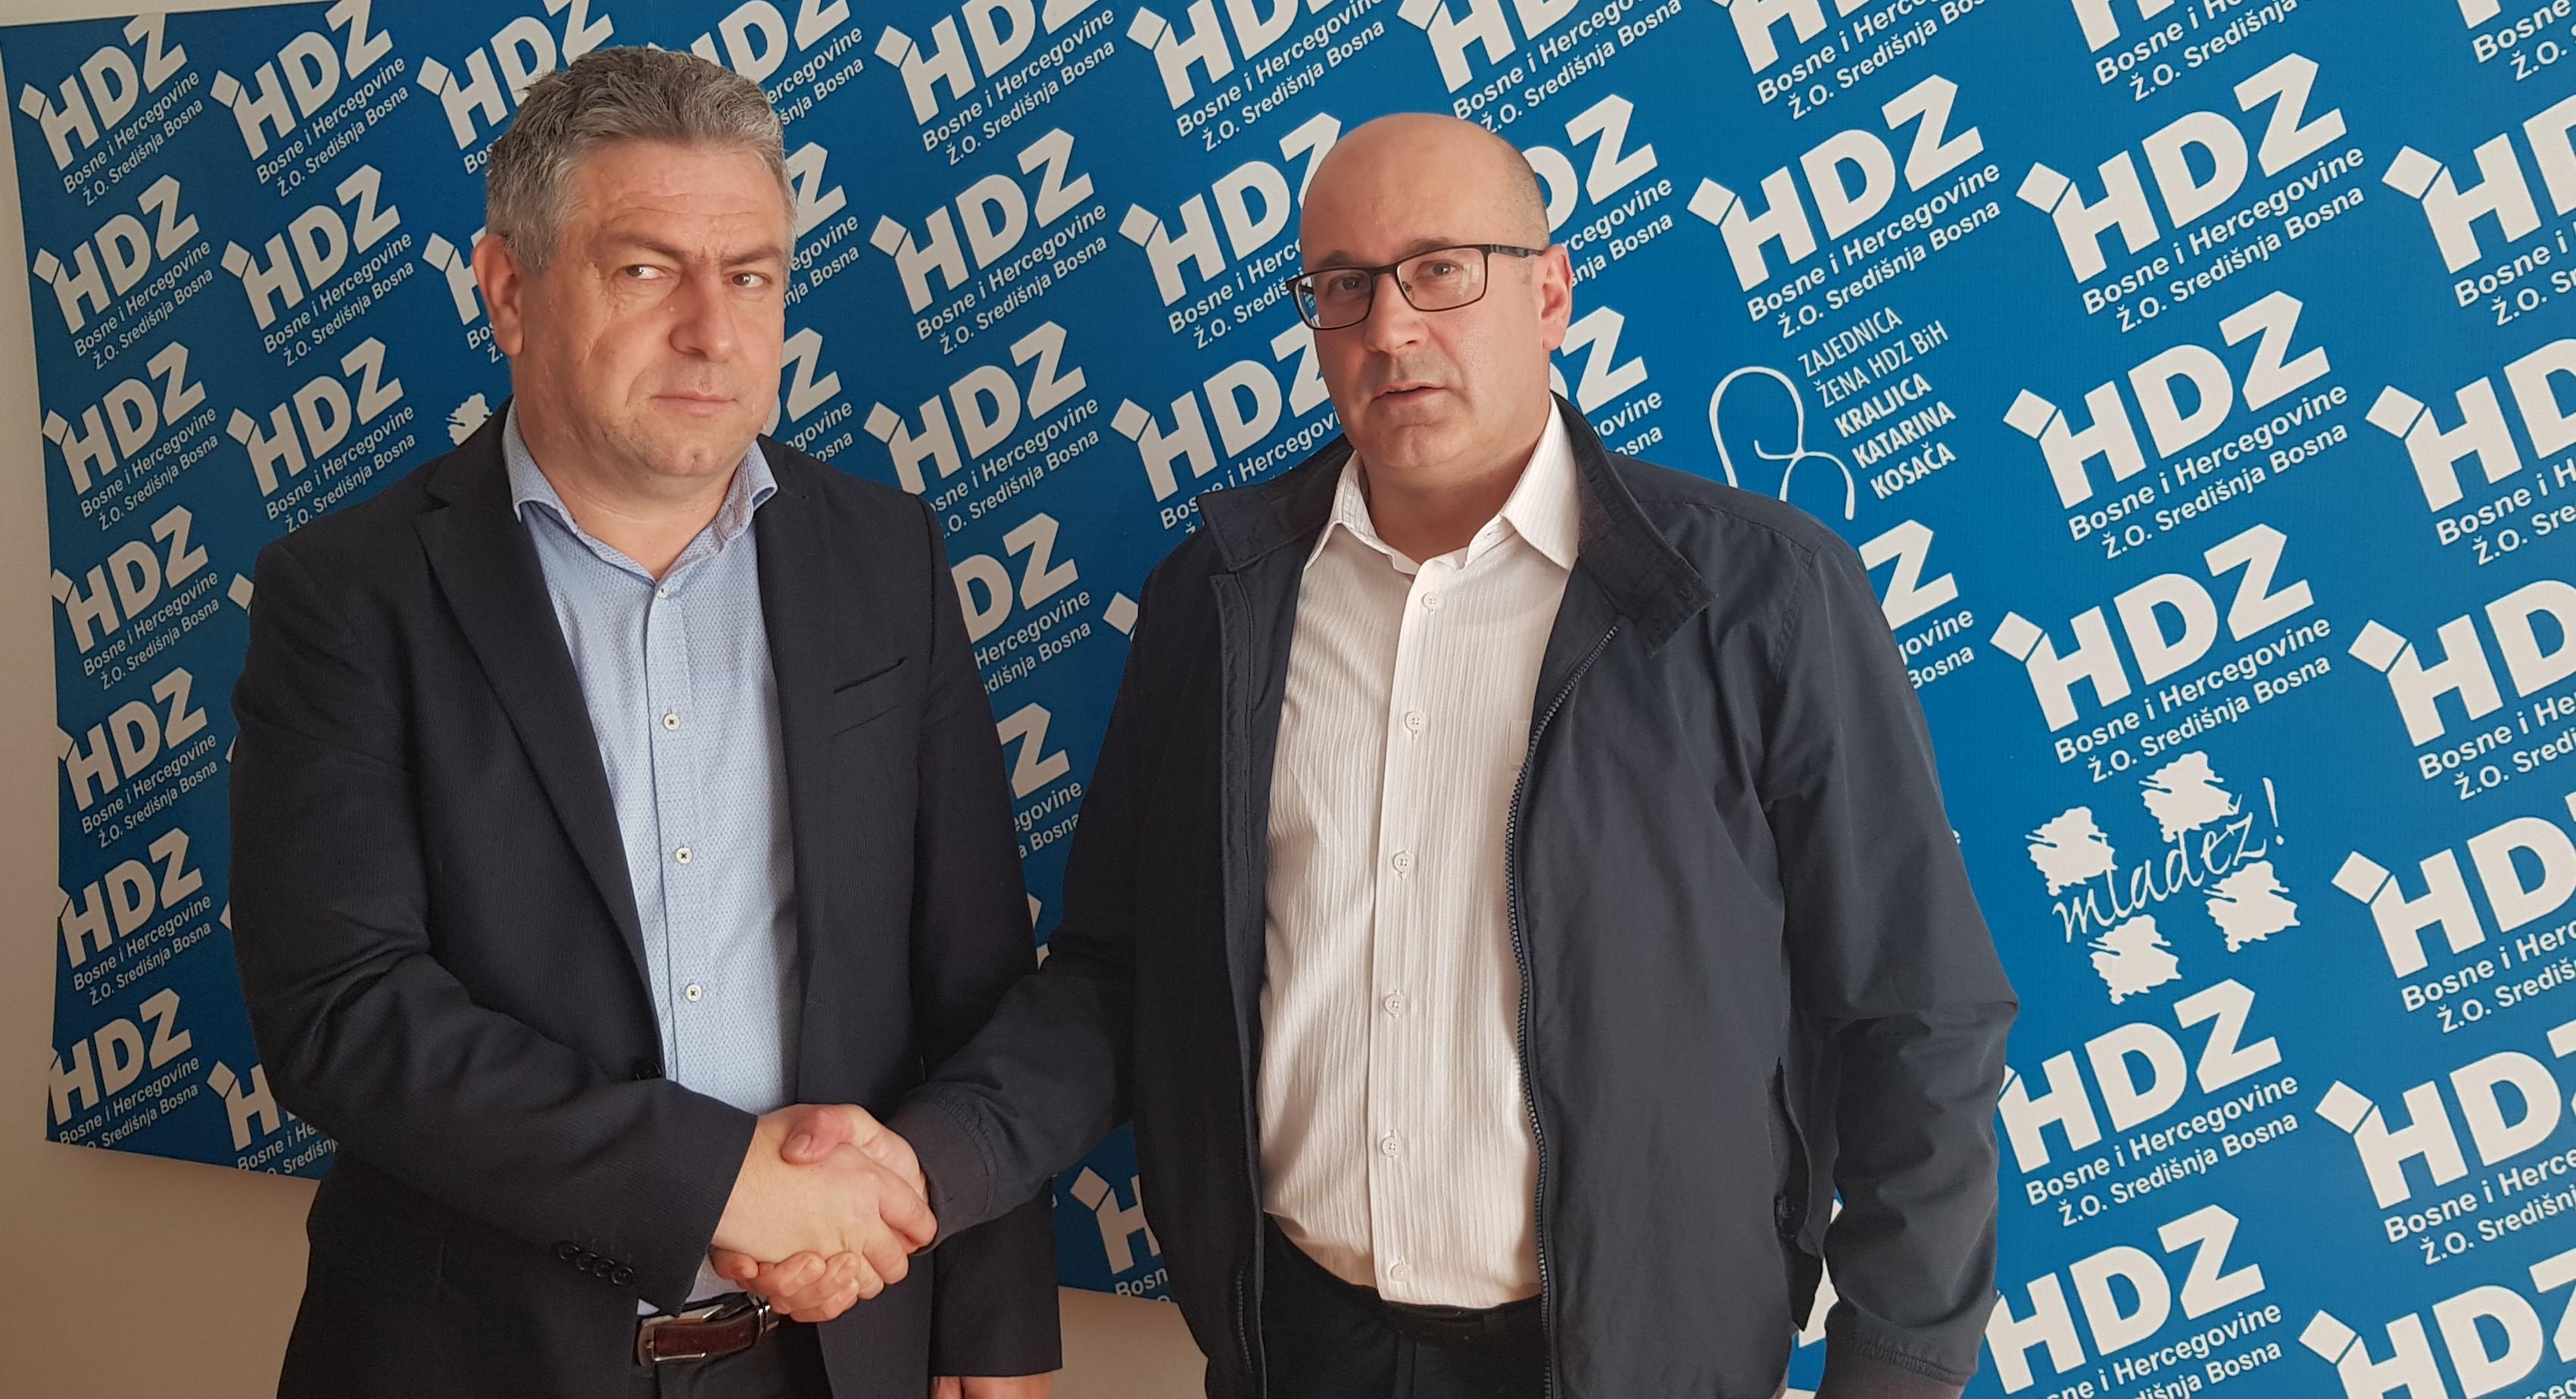 Kantonalni odbori HDZ-a BiH i HDZ-a 1990 u Travniku potpisali sporazum o poslijeizbornoj saradnji